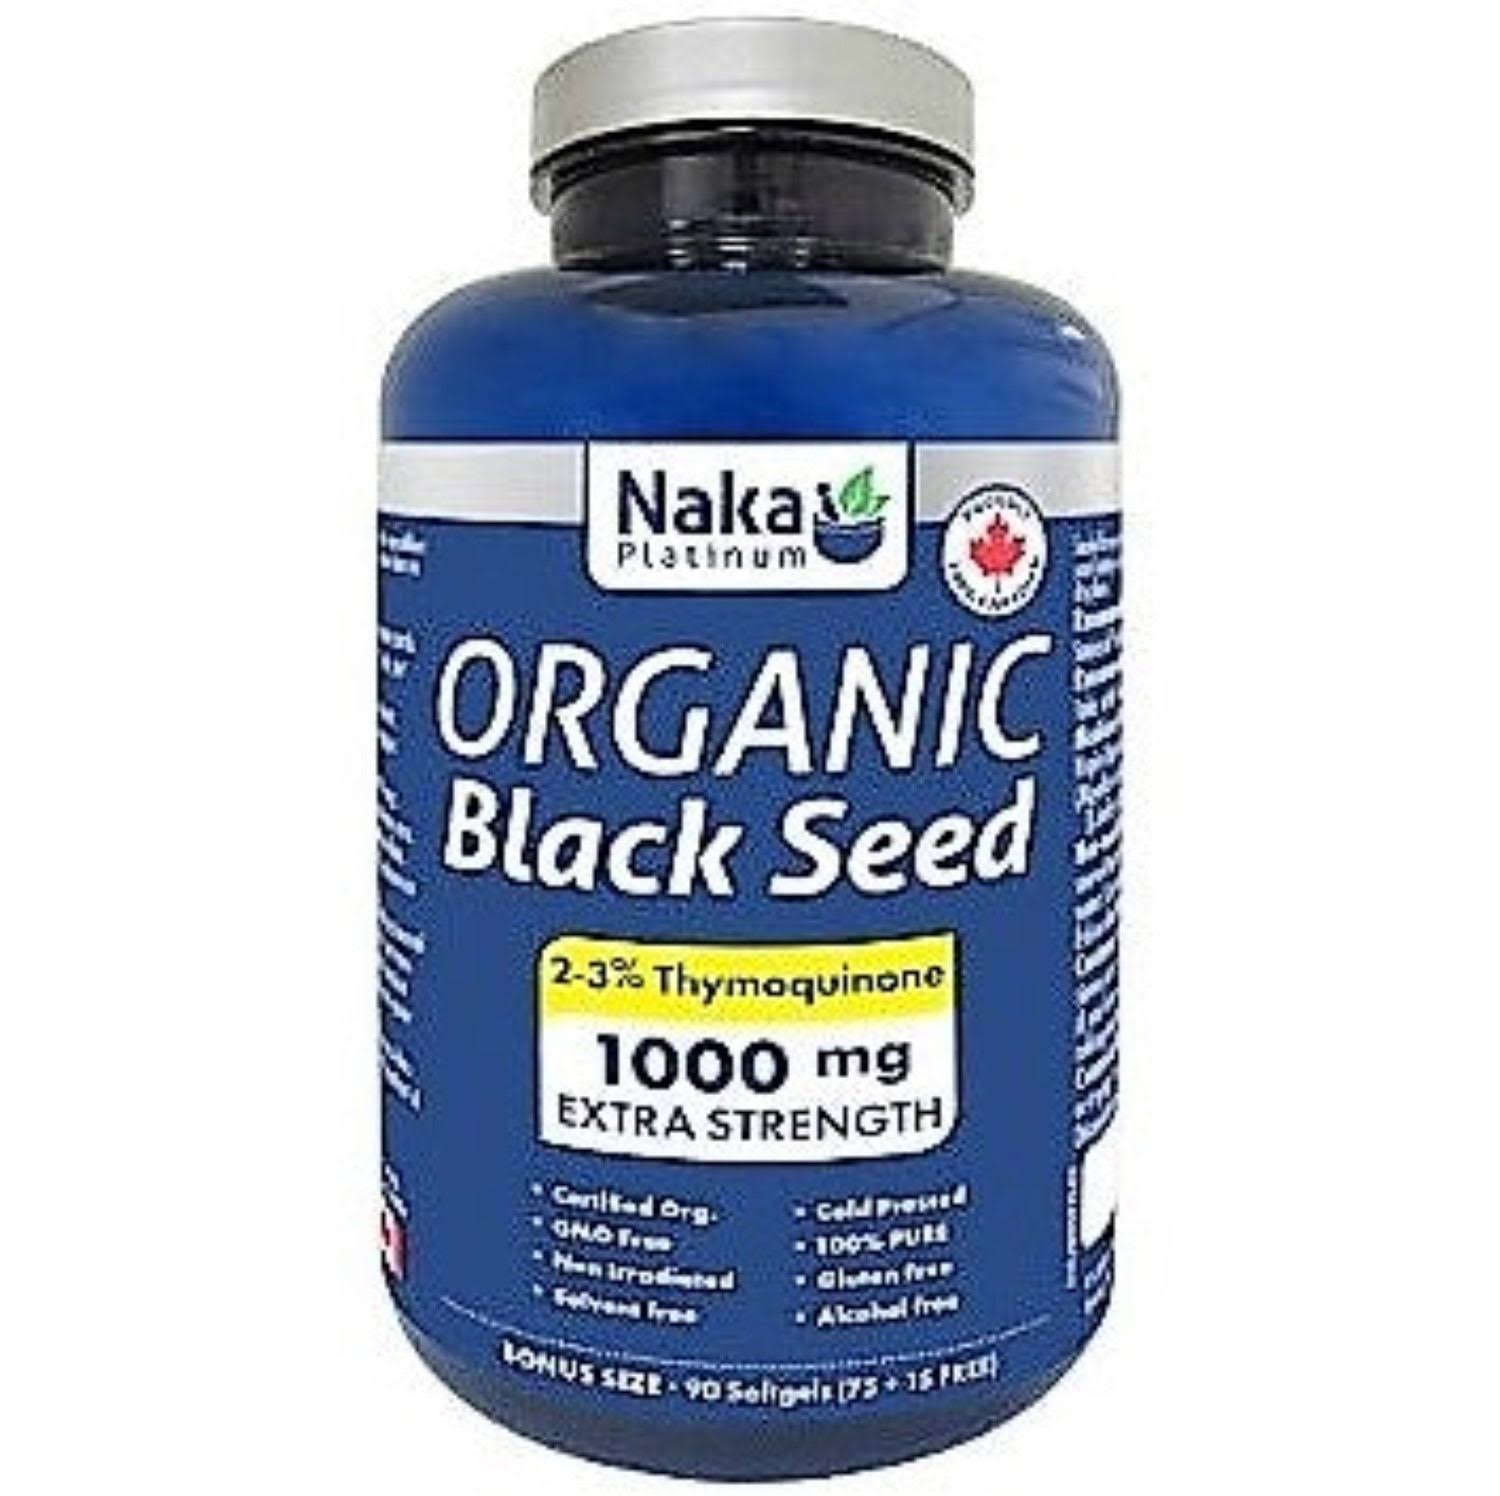 Naka Organic Black Seed 1000mg, 90 Softgels